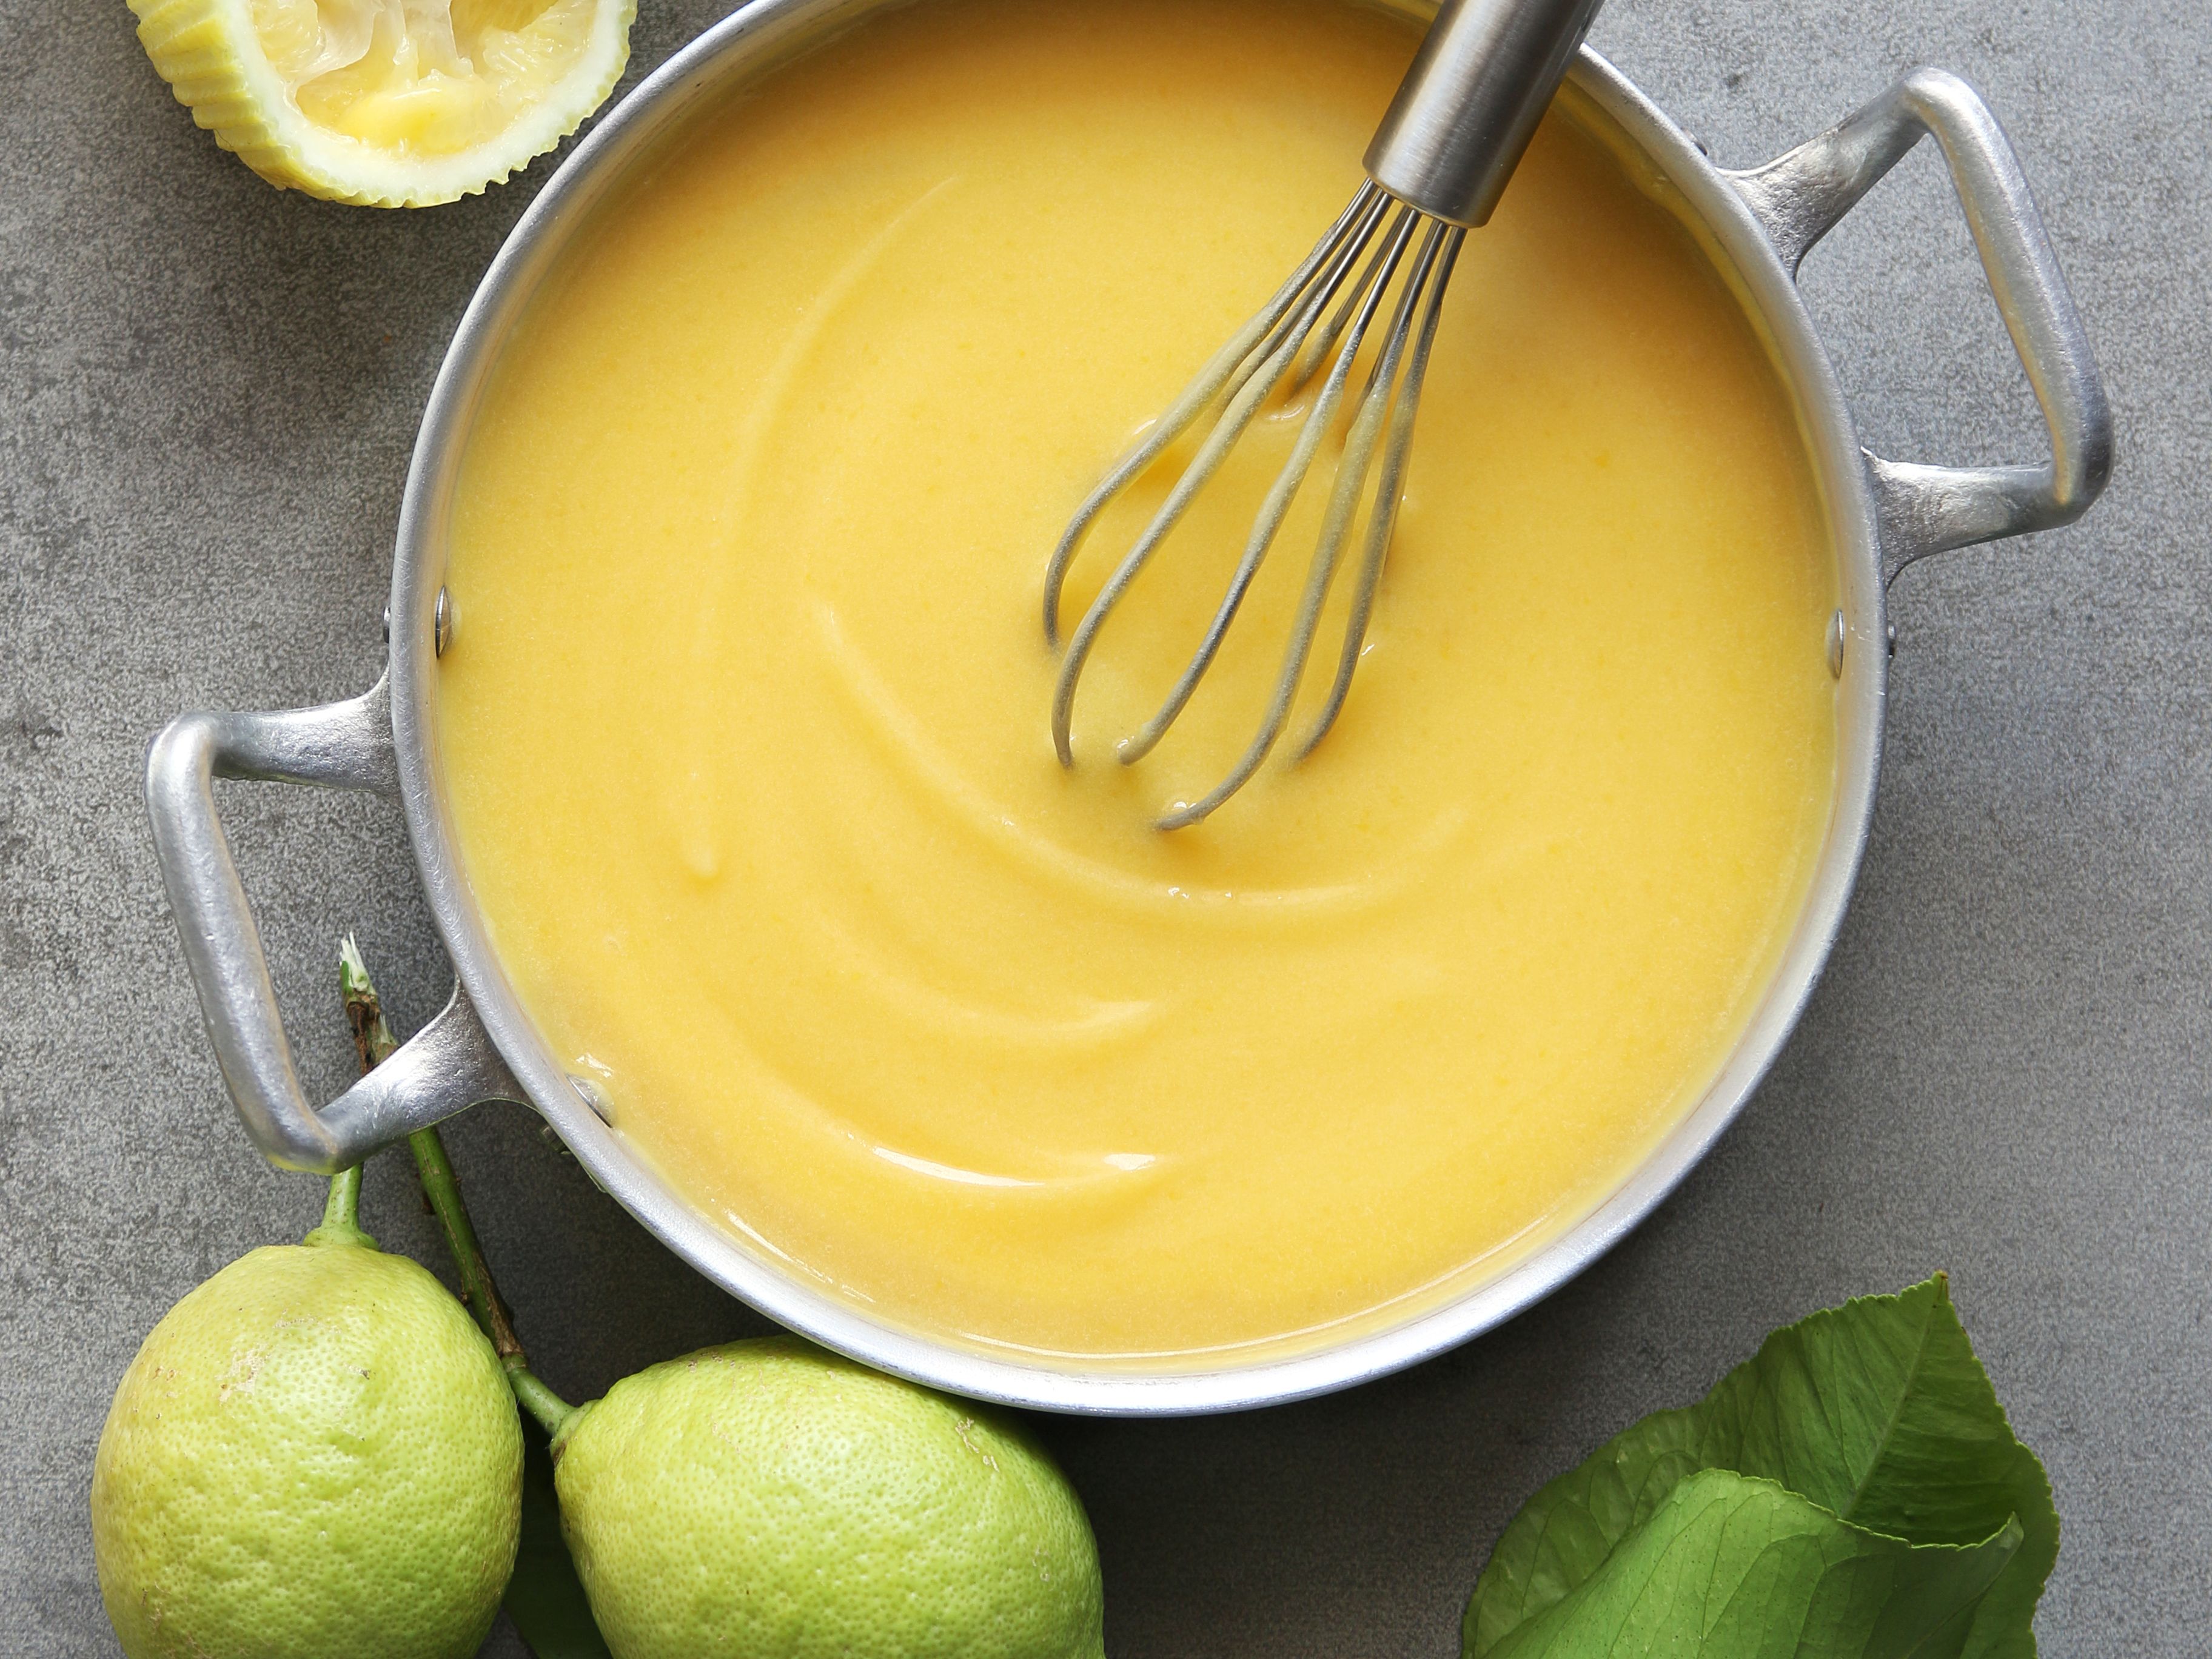 Les meilleures recettes de jus de citron - Cuisine Actuelle